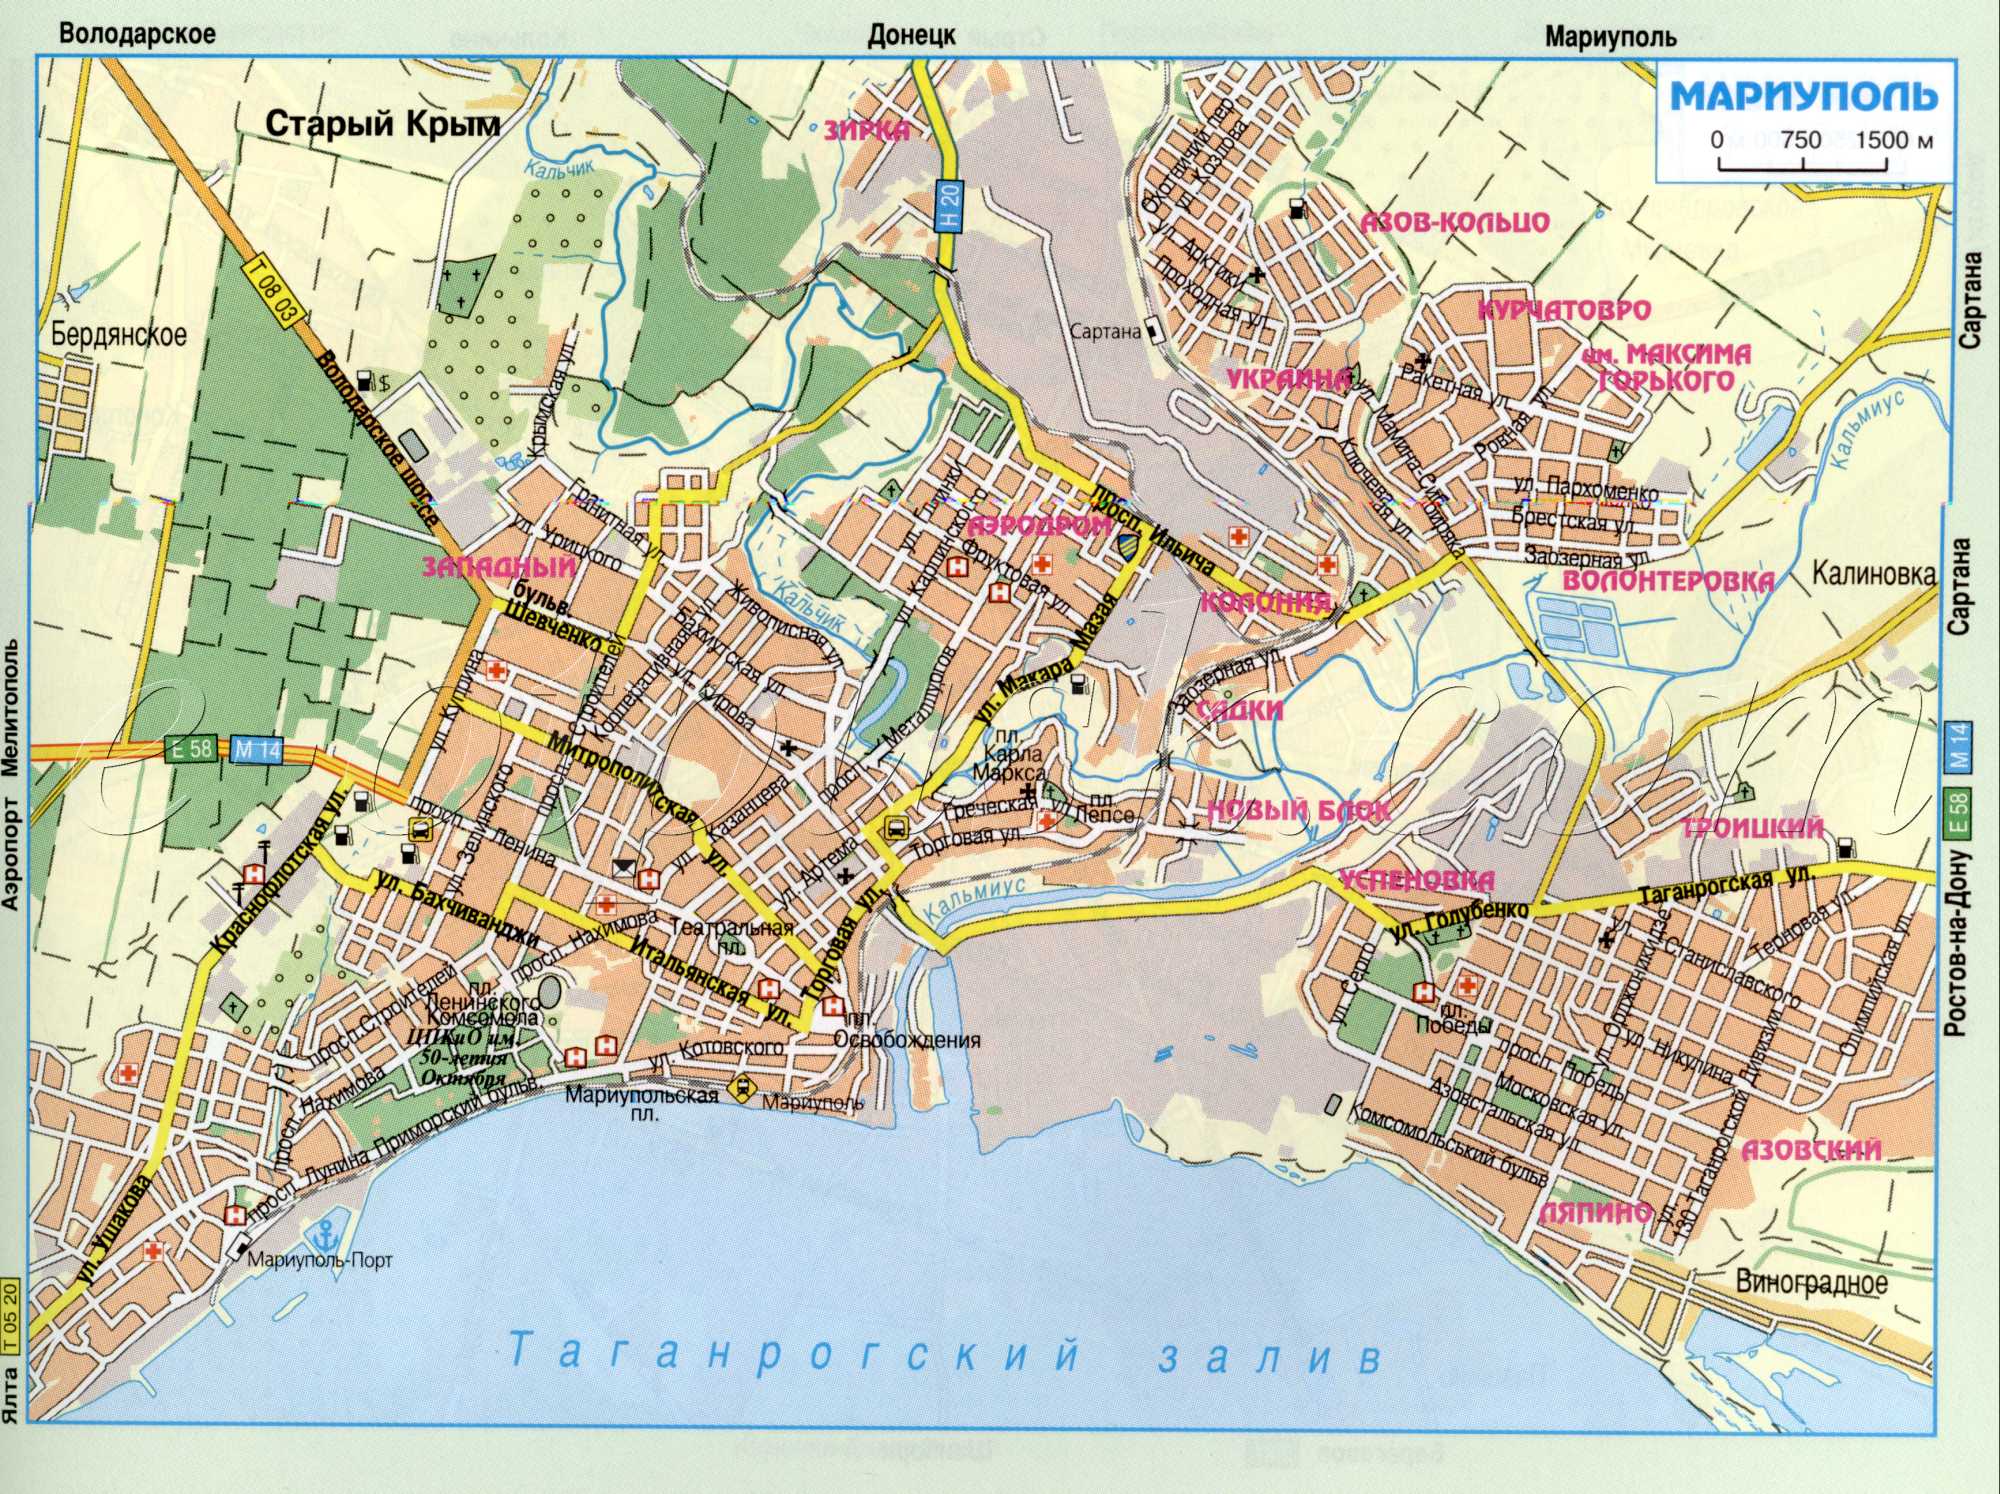 Karte von Mariupol (ex Zhdanov) aus dem Atlas von Autobahnen. Fahren Transit durch Mariupol, Gebiet Donezk. kostenlos herunterladen